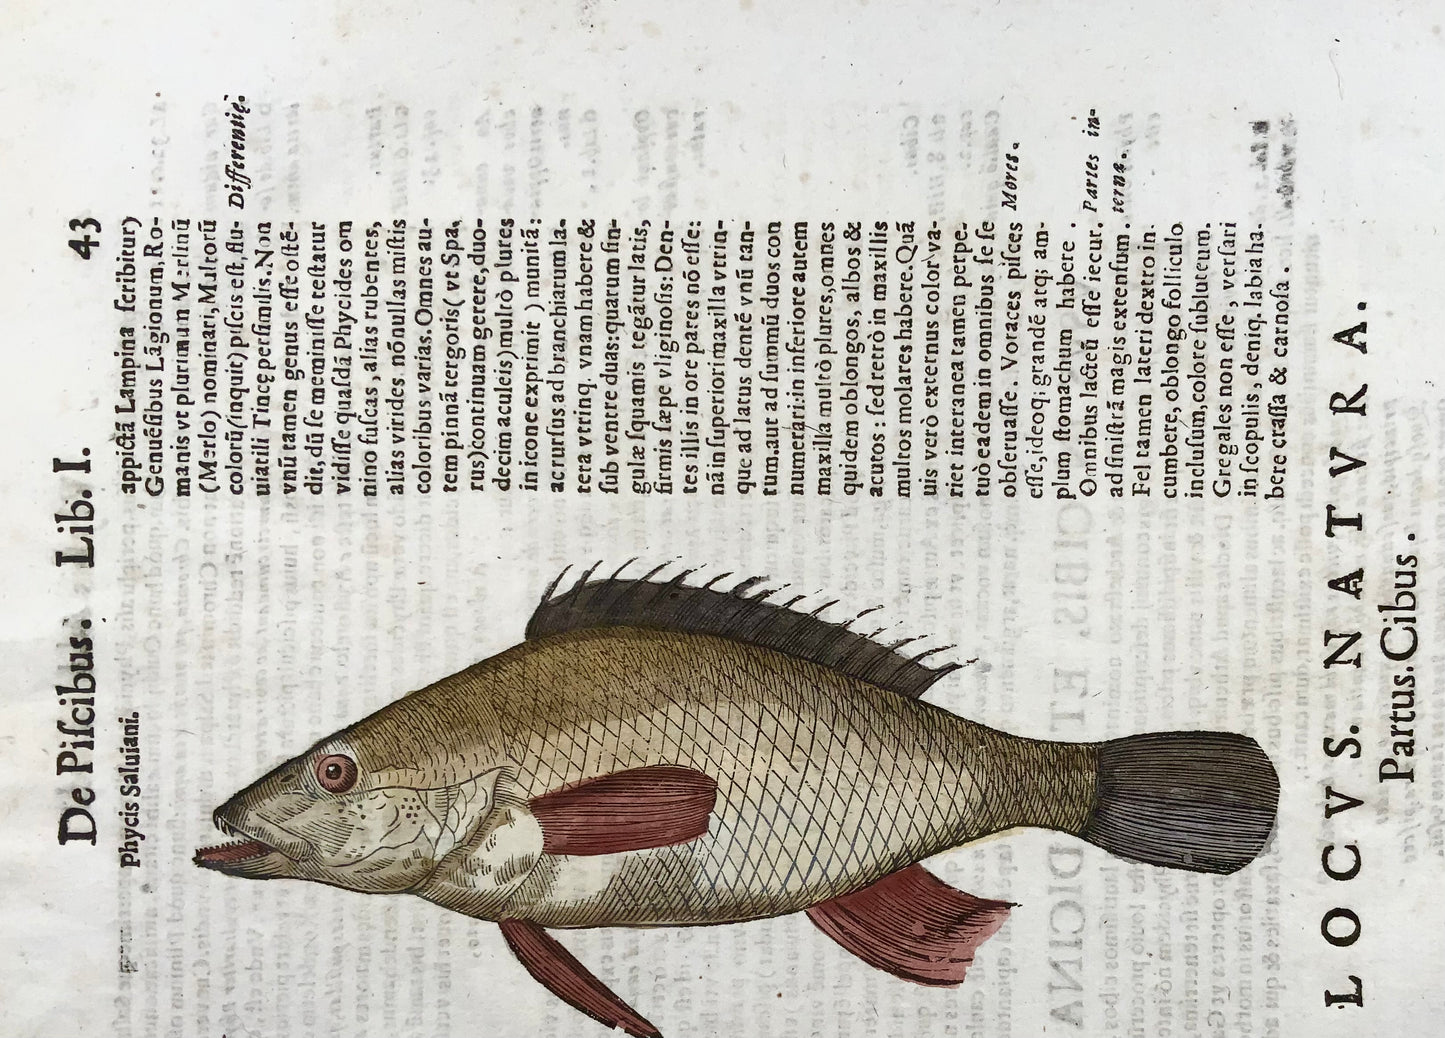 1638 Phylis Salviani, Pesce forcone, Aldrovandi, grande foglia xilografica in folio